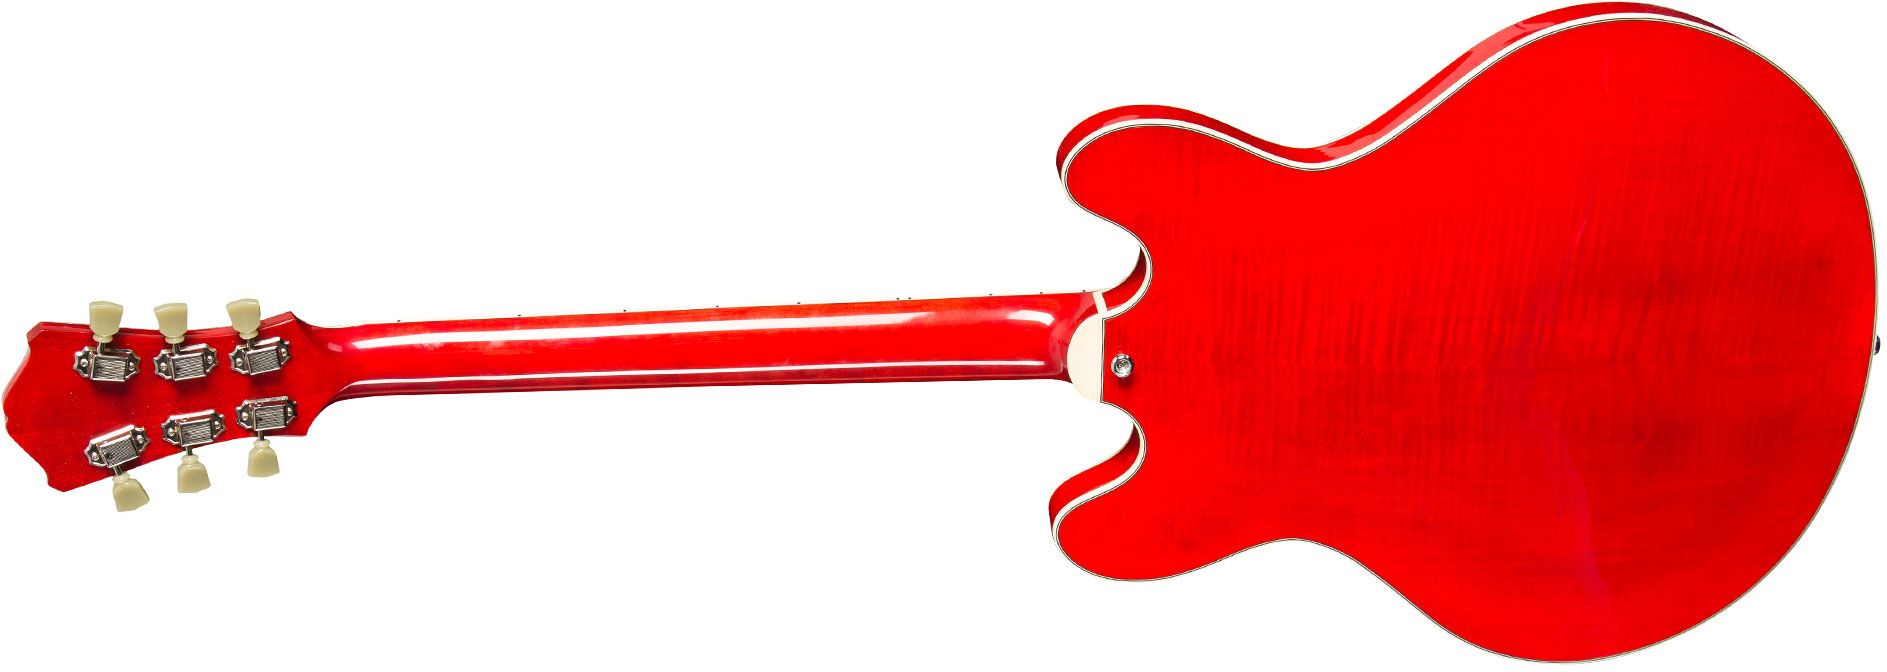 Eastman T486 Thinline Laminate Tout Erable Hh Seymour Duncan Ht Eb - Red - Guitarra eléctrica semi caja - Variation 1